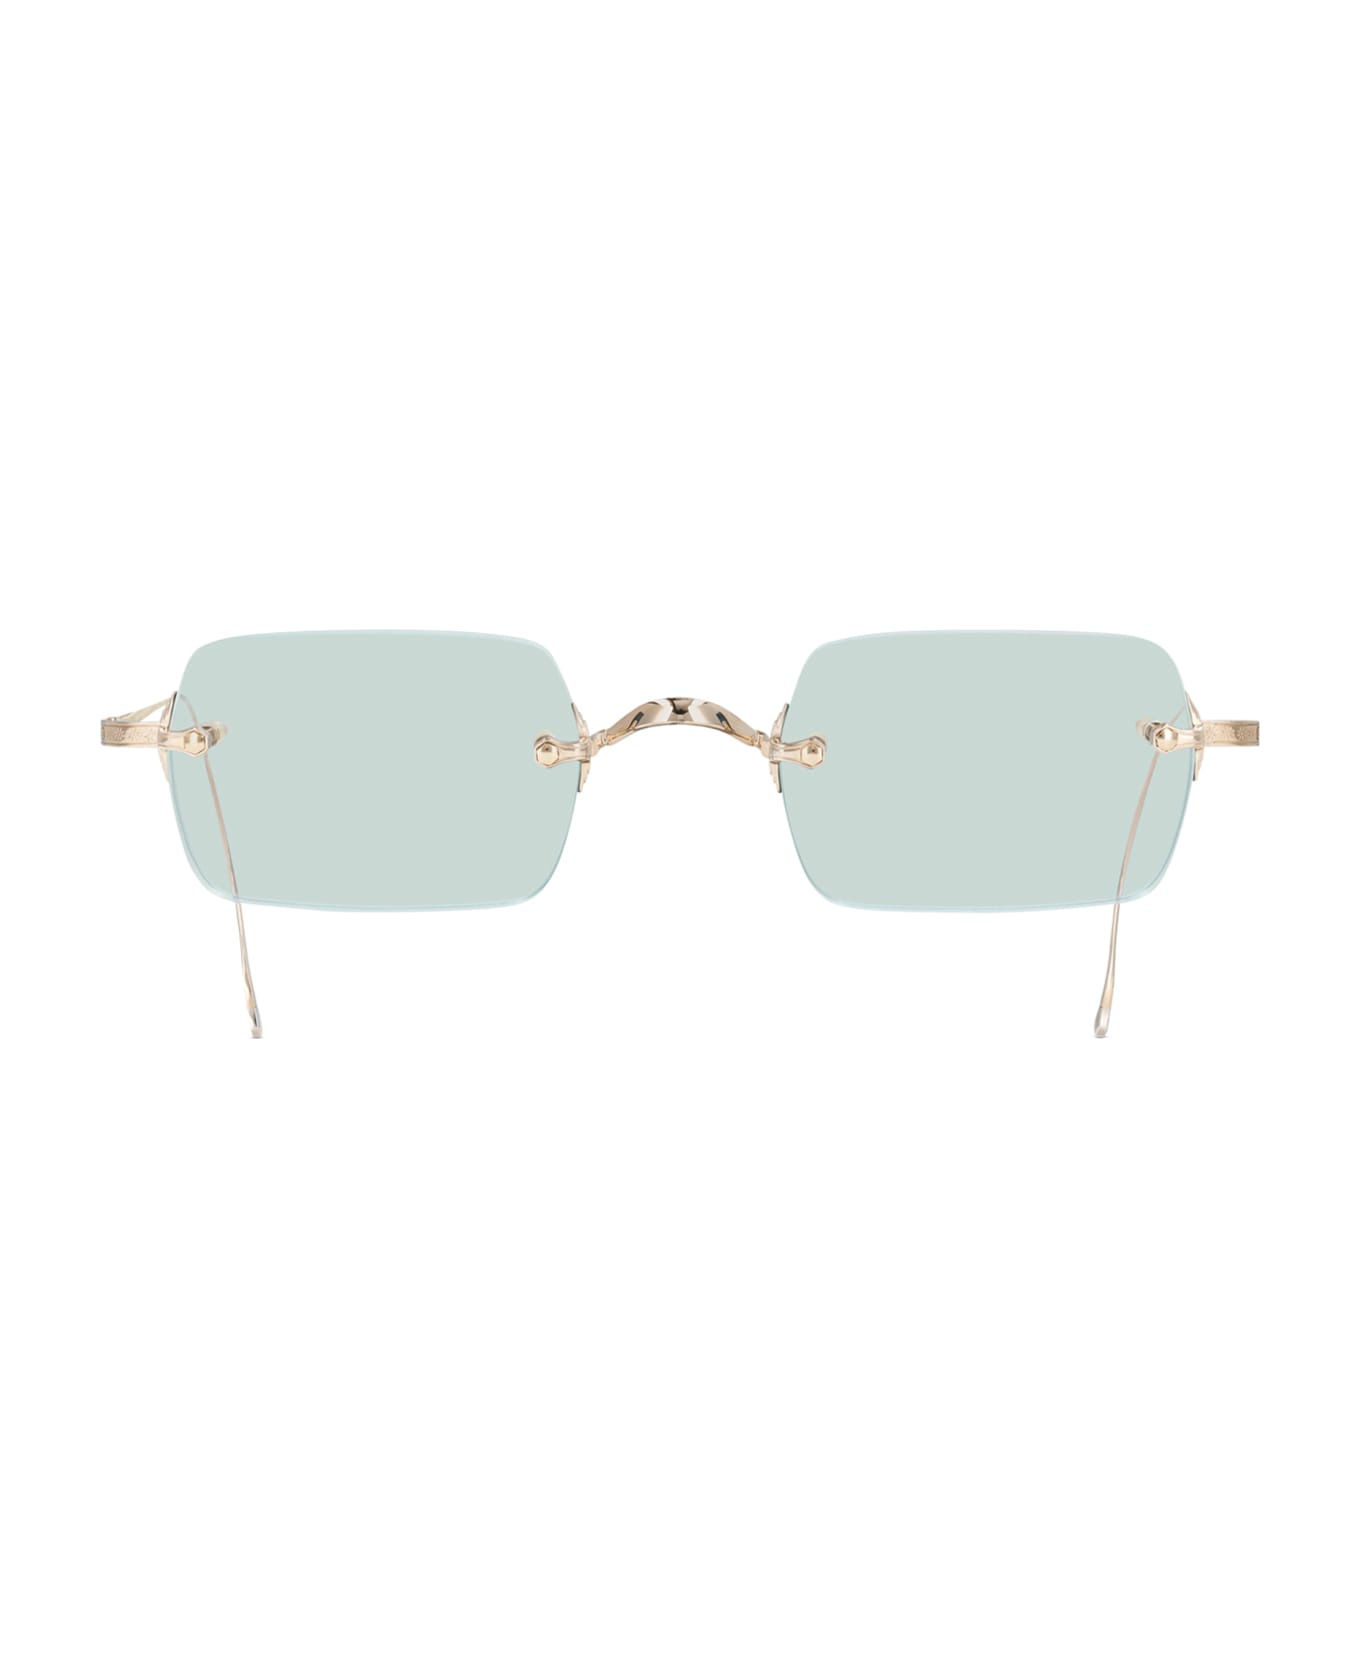 Mr. Leight Banzai S 12k White Gold Sunglasses -  12K White Gold サングラス